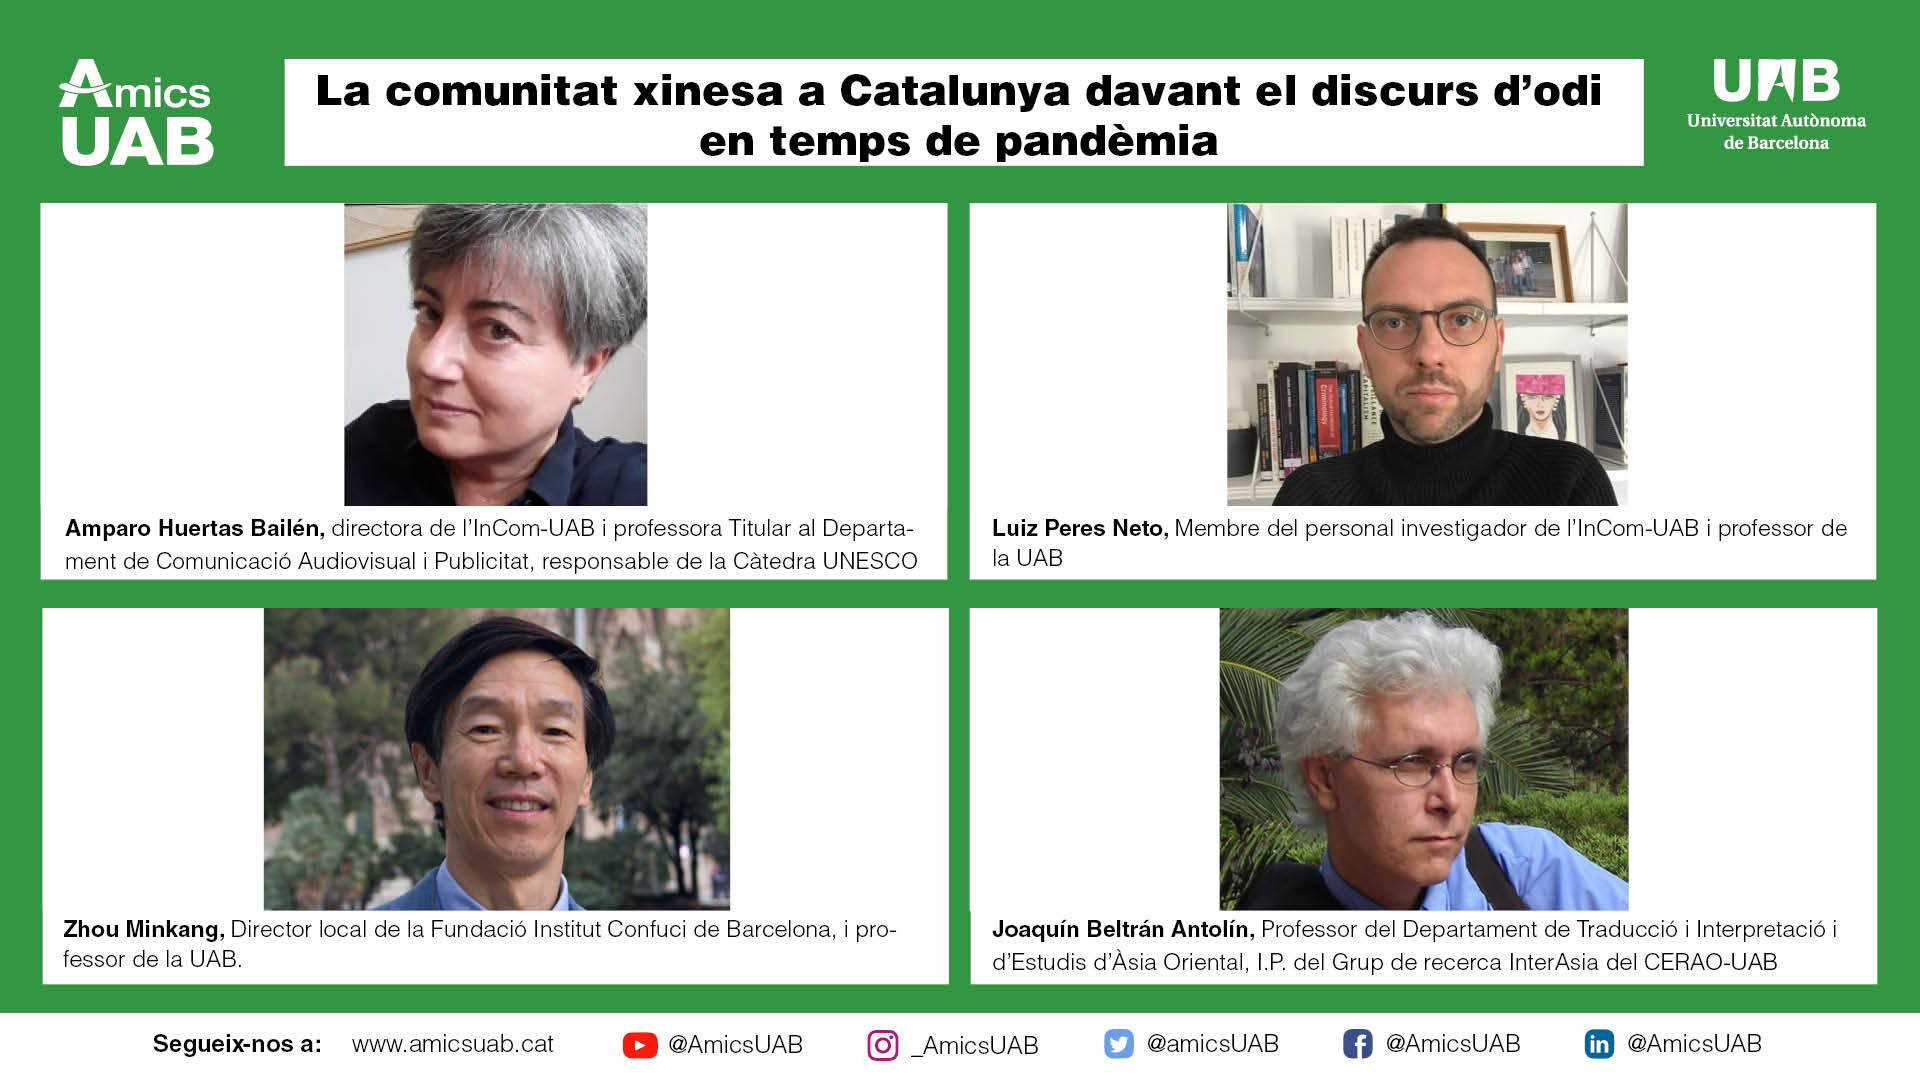 La comunitat xinesa a Catalunya davant el discurs d’odi en temps de pandèmia